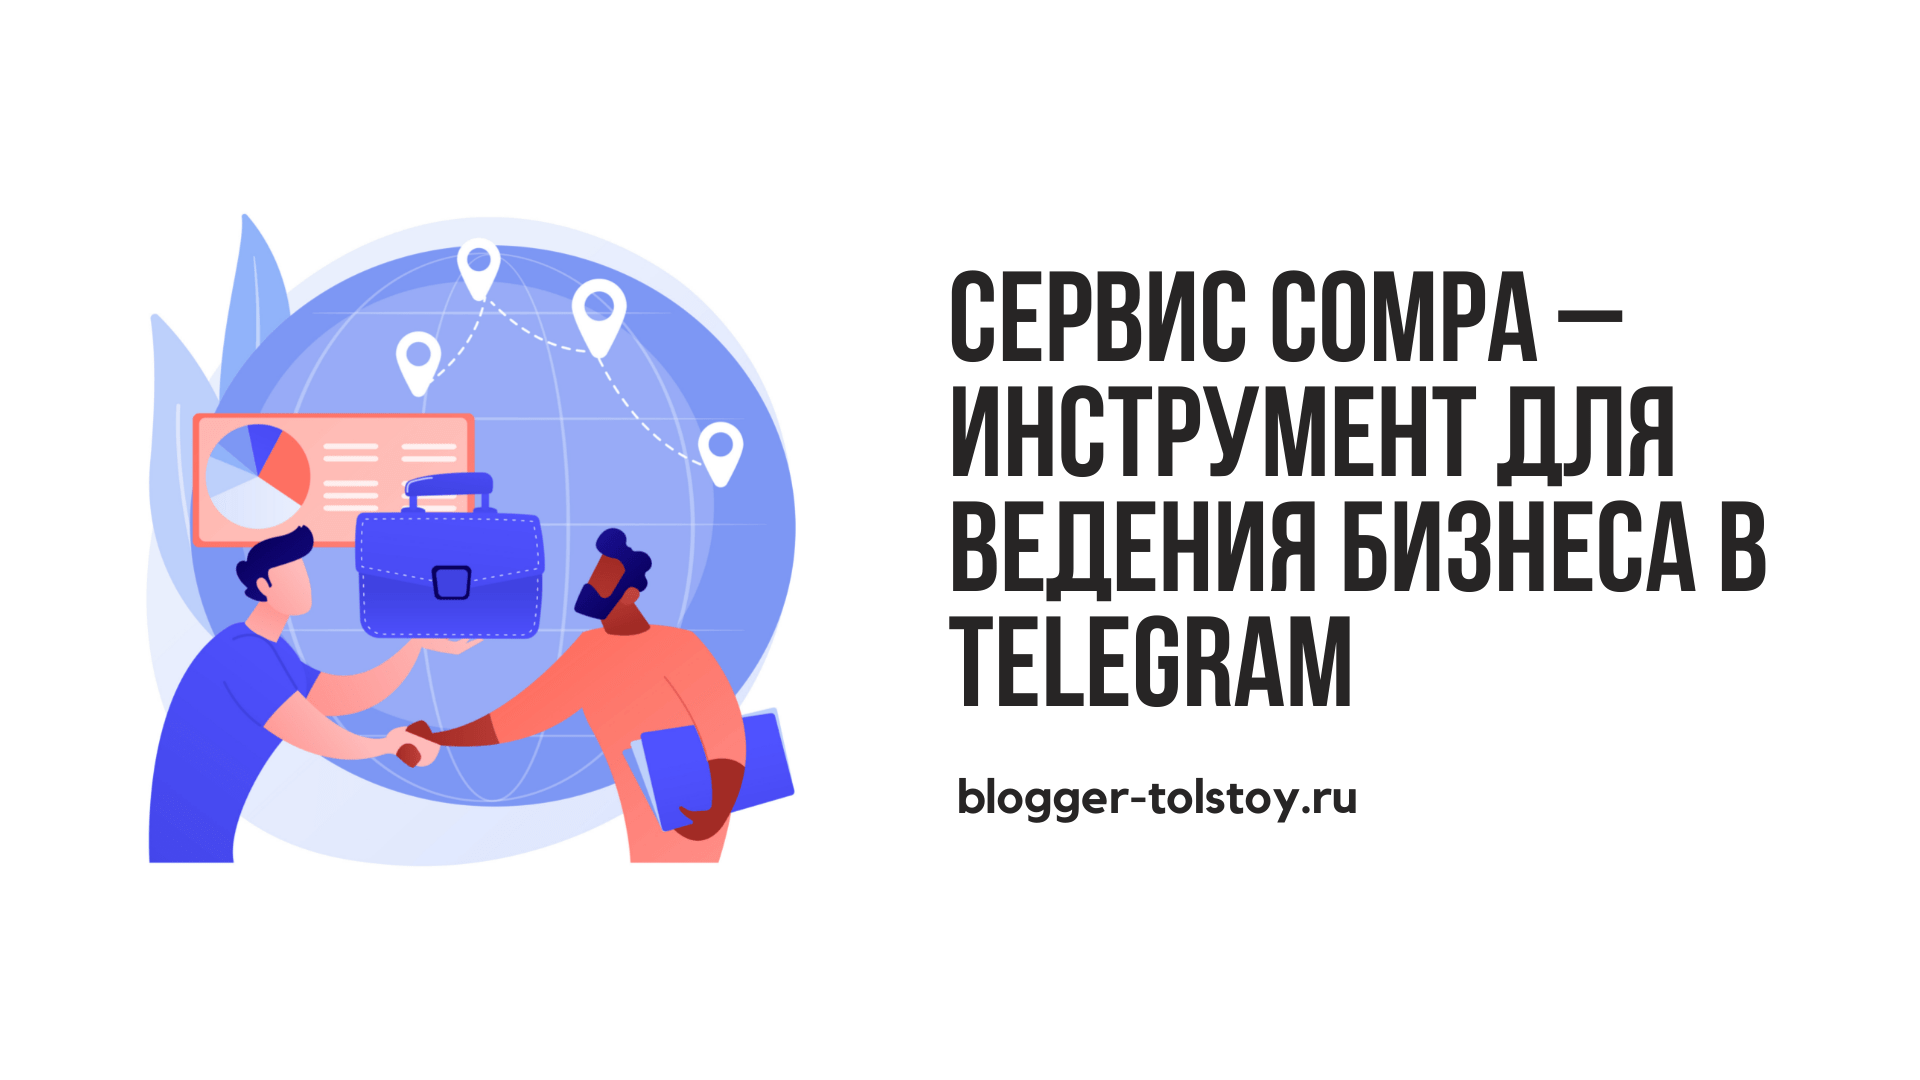 Превью к статье: "Сервис Compa – удобный инструмент для ведения бизнеса в Telegram".